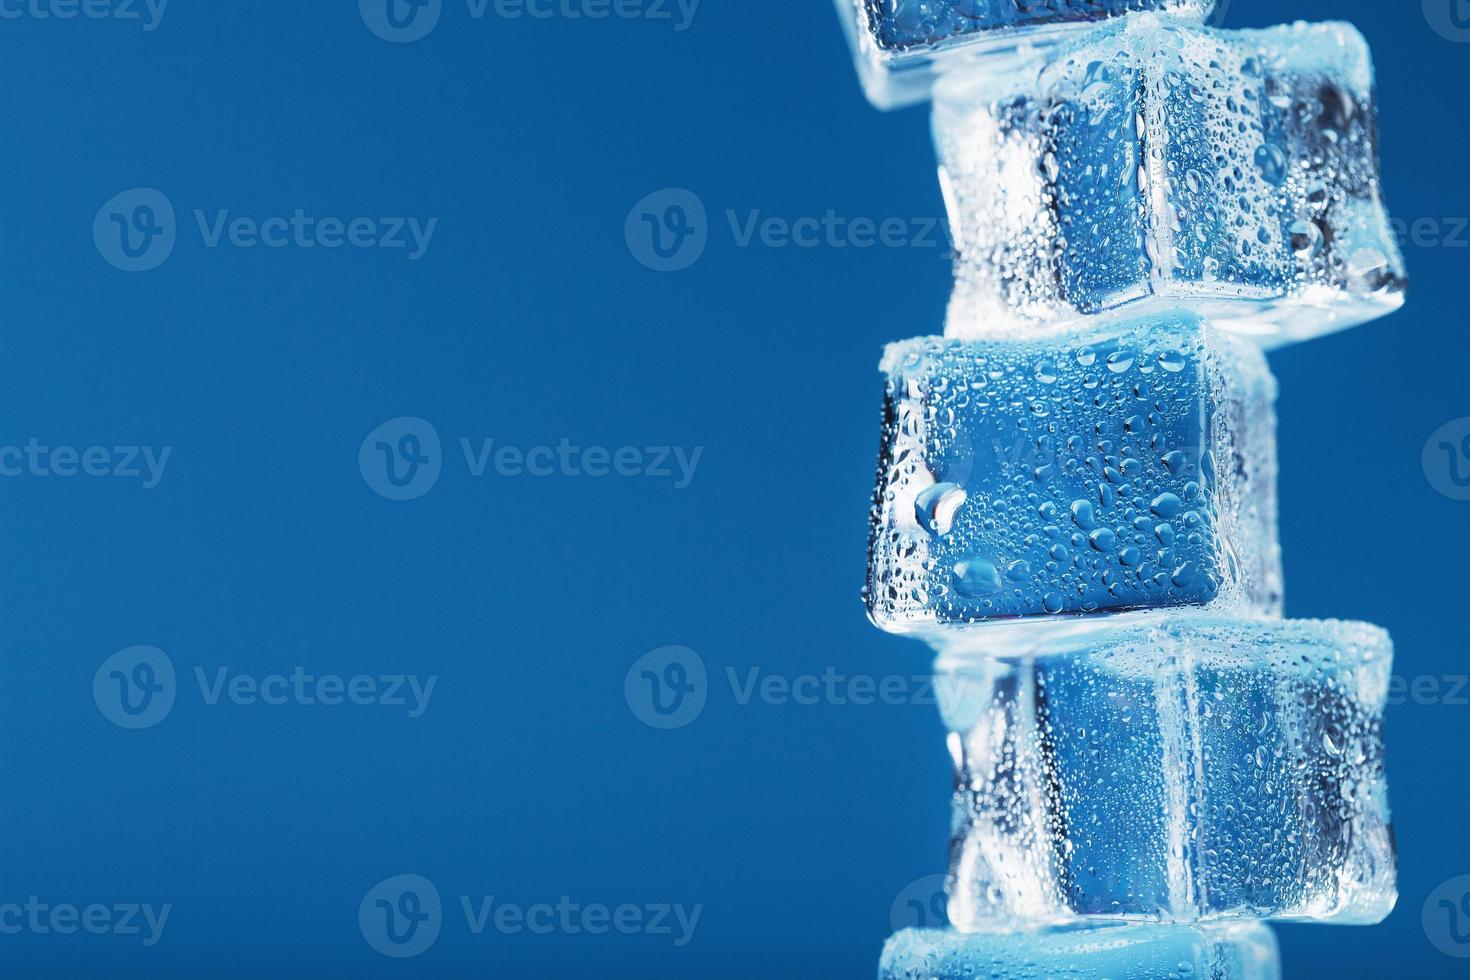 is kuber med vatten droppar torn i en rad på en blå bakgrund. foto